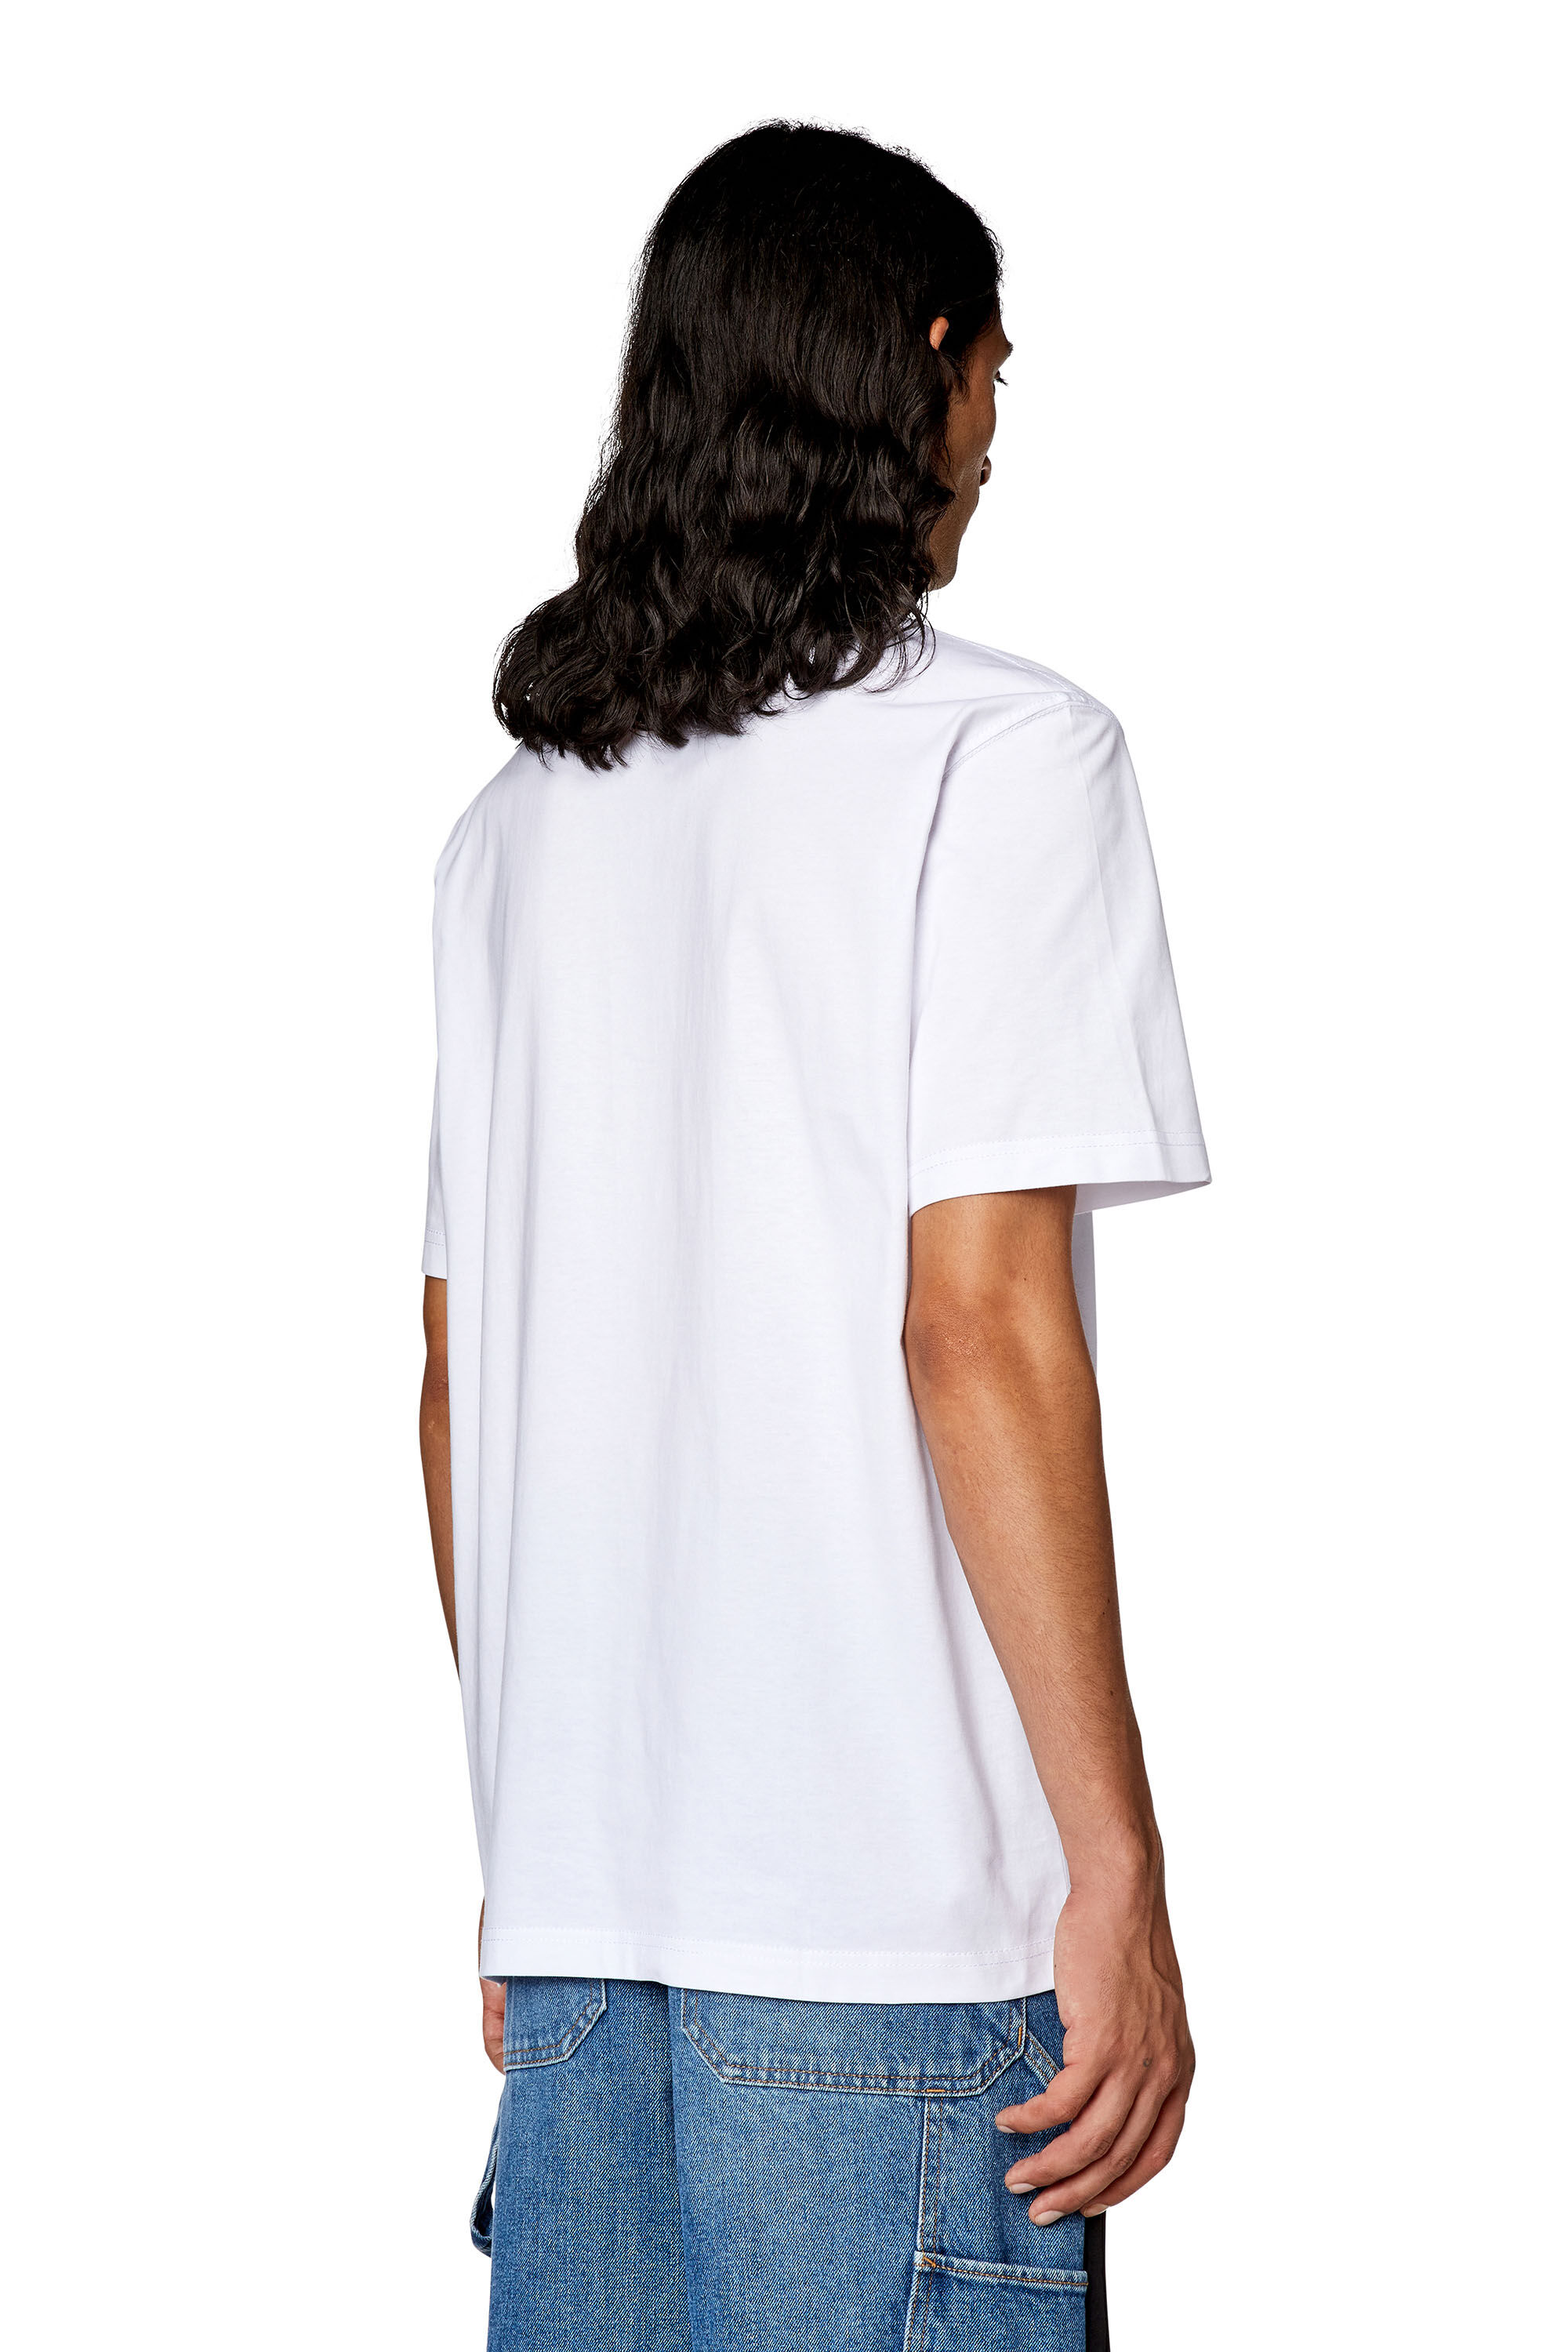 LEWEL Men Embellished Slim Fit Shirt For Men (Black, M)